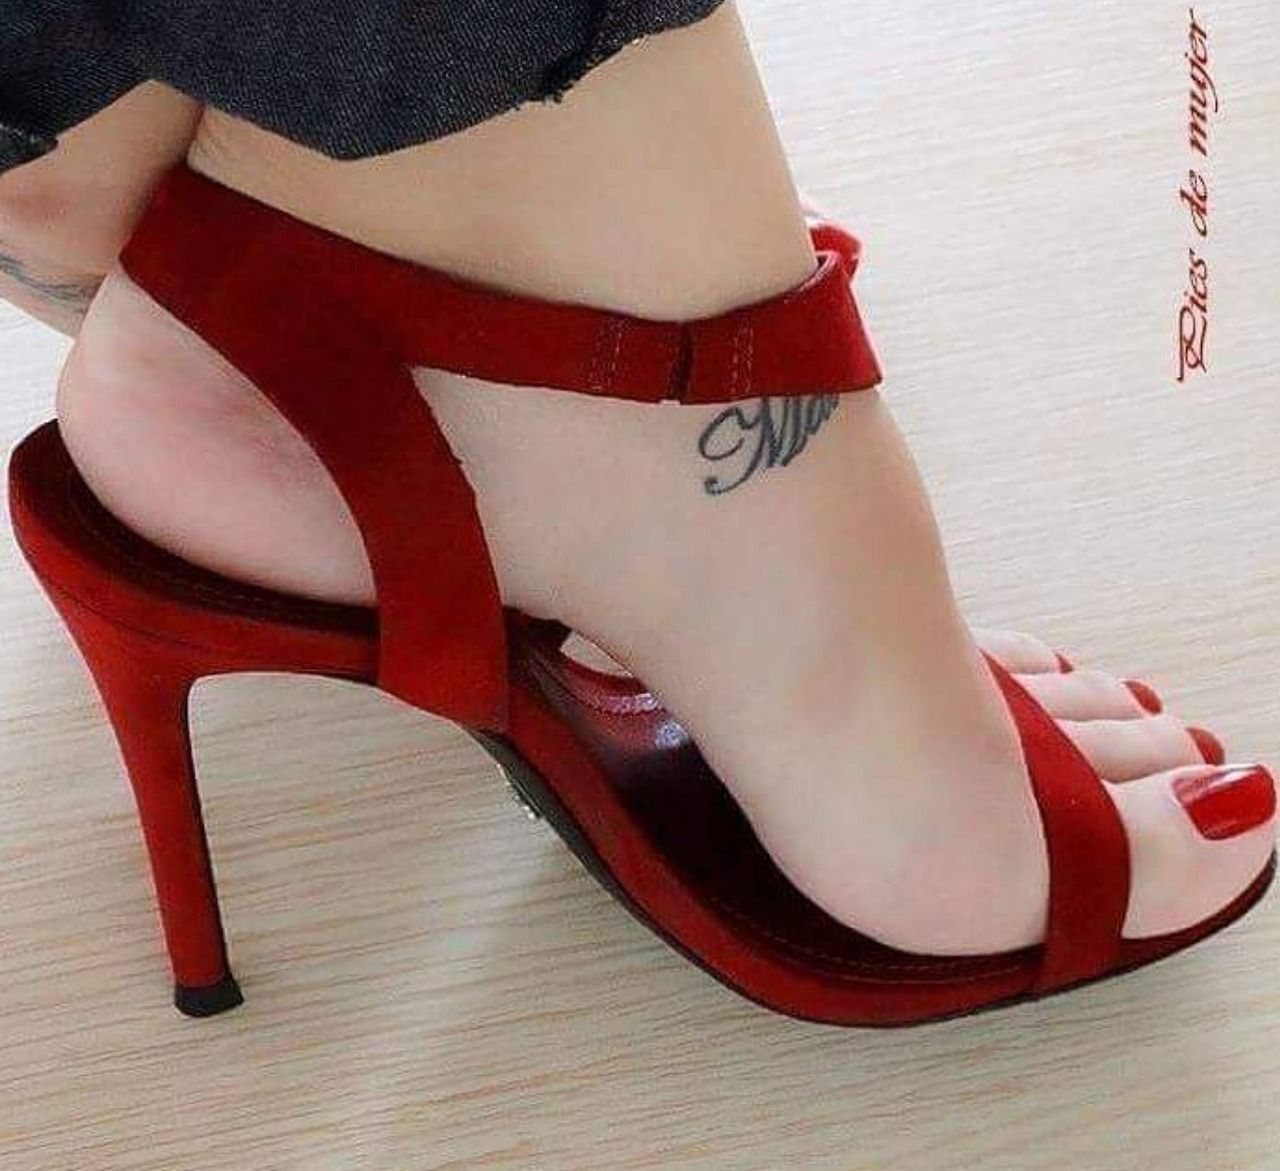 Pretty feet in heels